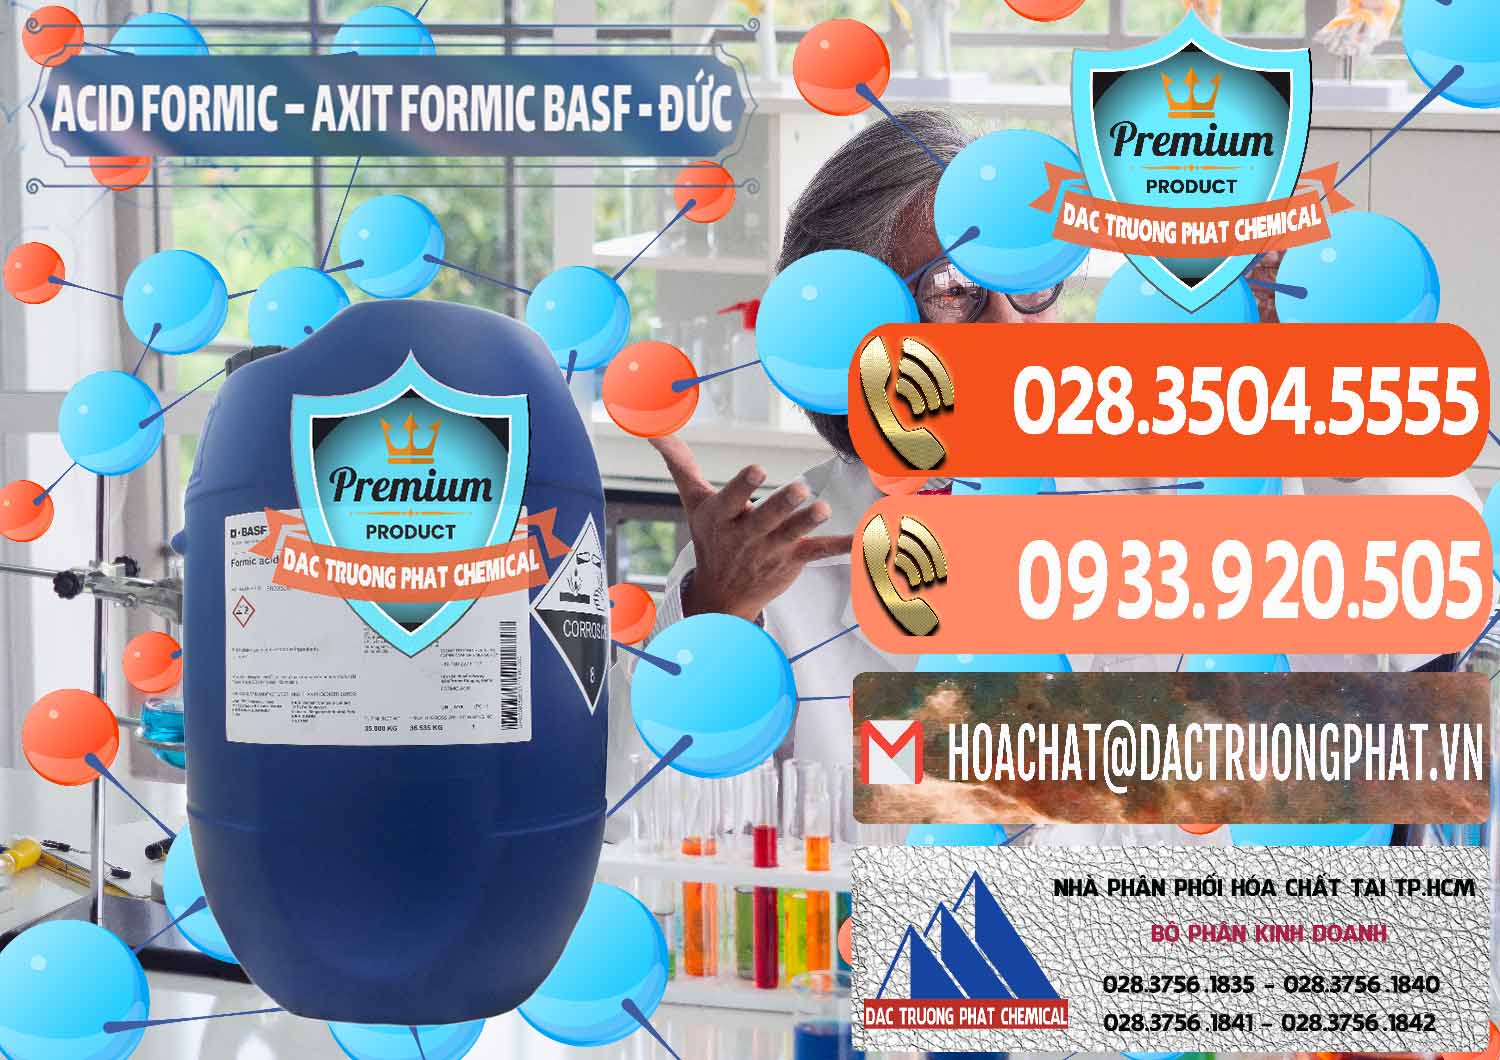 Đơn vị chuyên cung cấp - bán Acid Formic - Axit Formic BASF Đức Germany - 0028 - Cung cấp và phân phối hóa chất tại TP.HCM - hoachatmientay.com